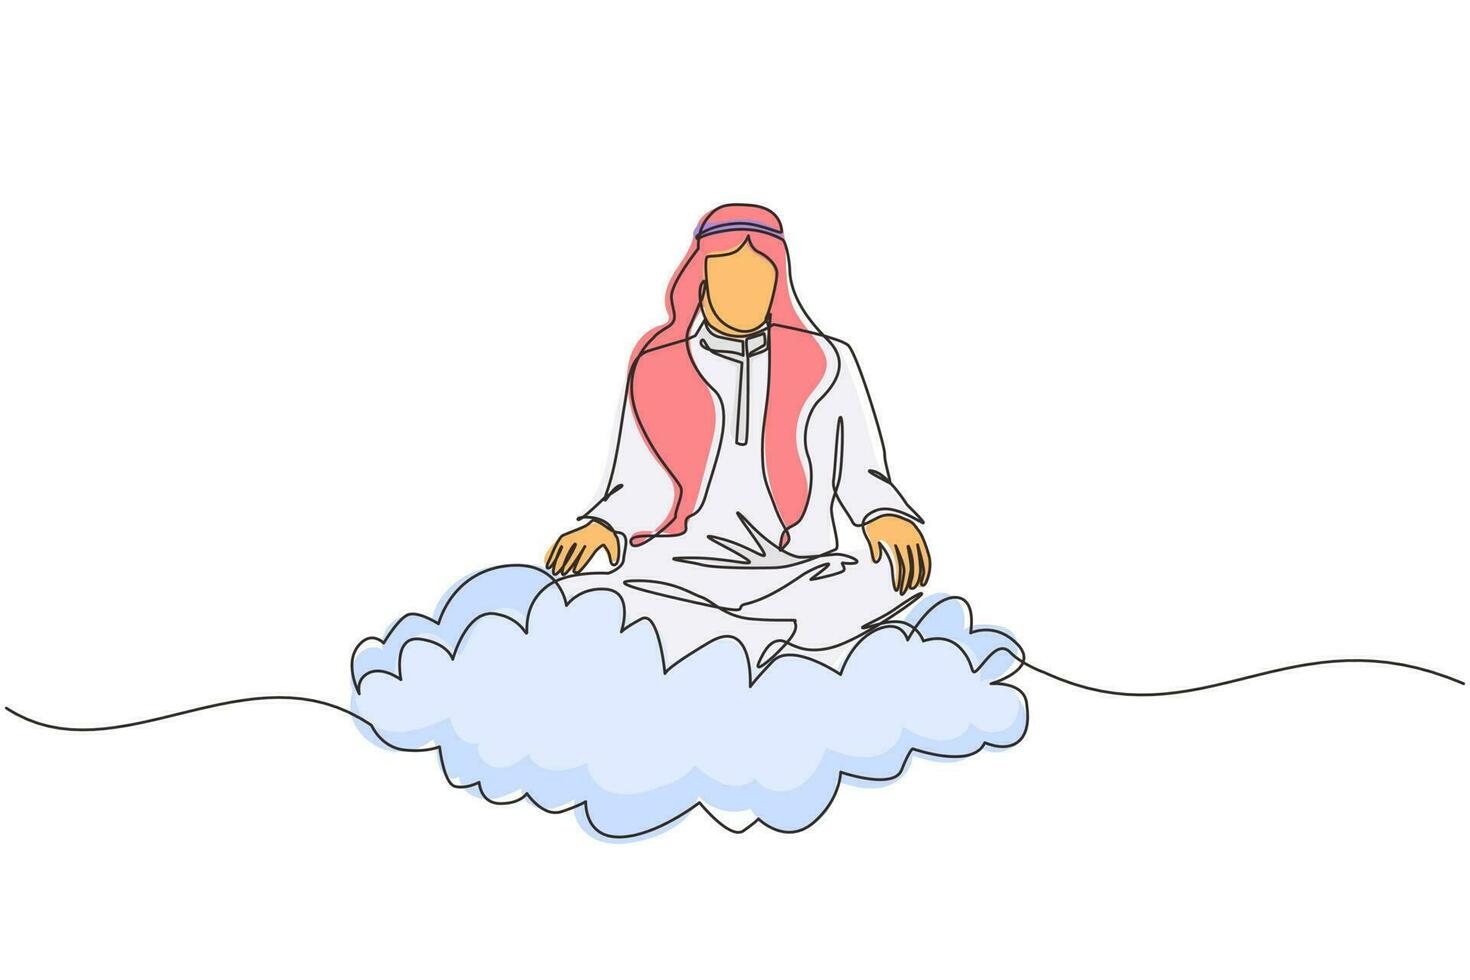 singolo impiegato o uomo d'affari di disegno a tratteggio si rilassa e medita nella posizione del loto sulle nuvole. uomo arabo allegro che si rilassa con la posa di yoga o meditazione. vettore grafico di progettazione di linea continua